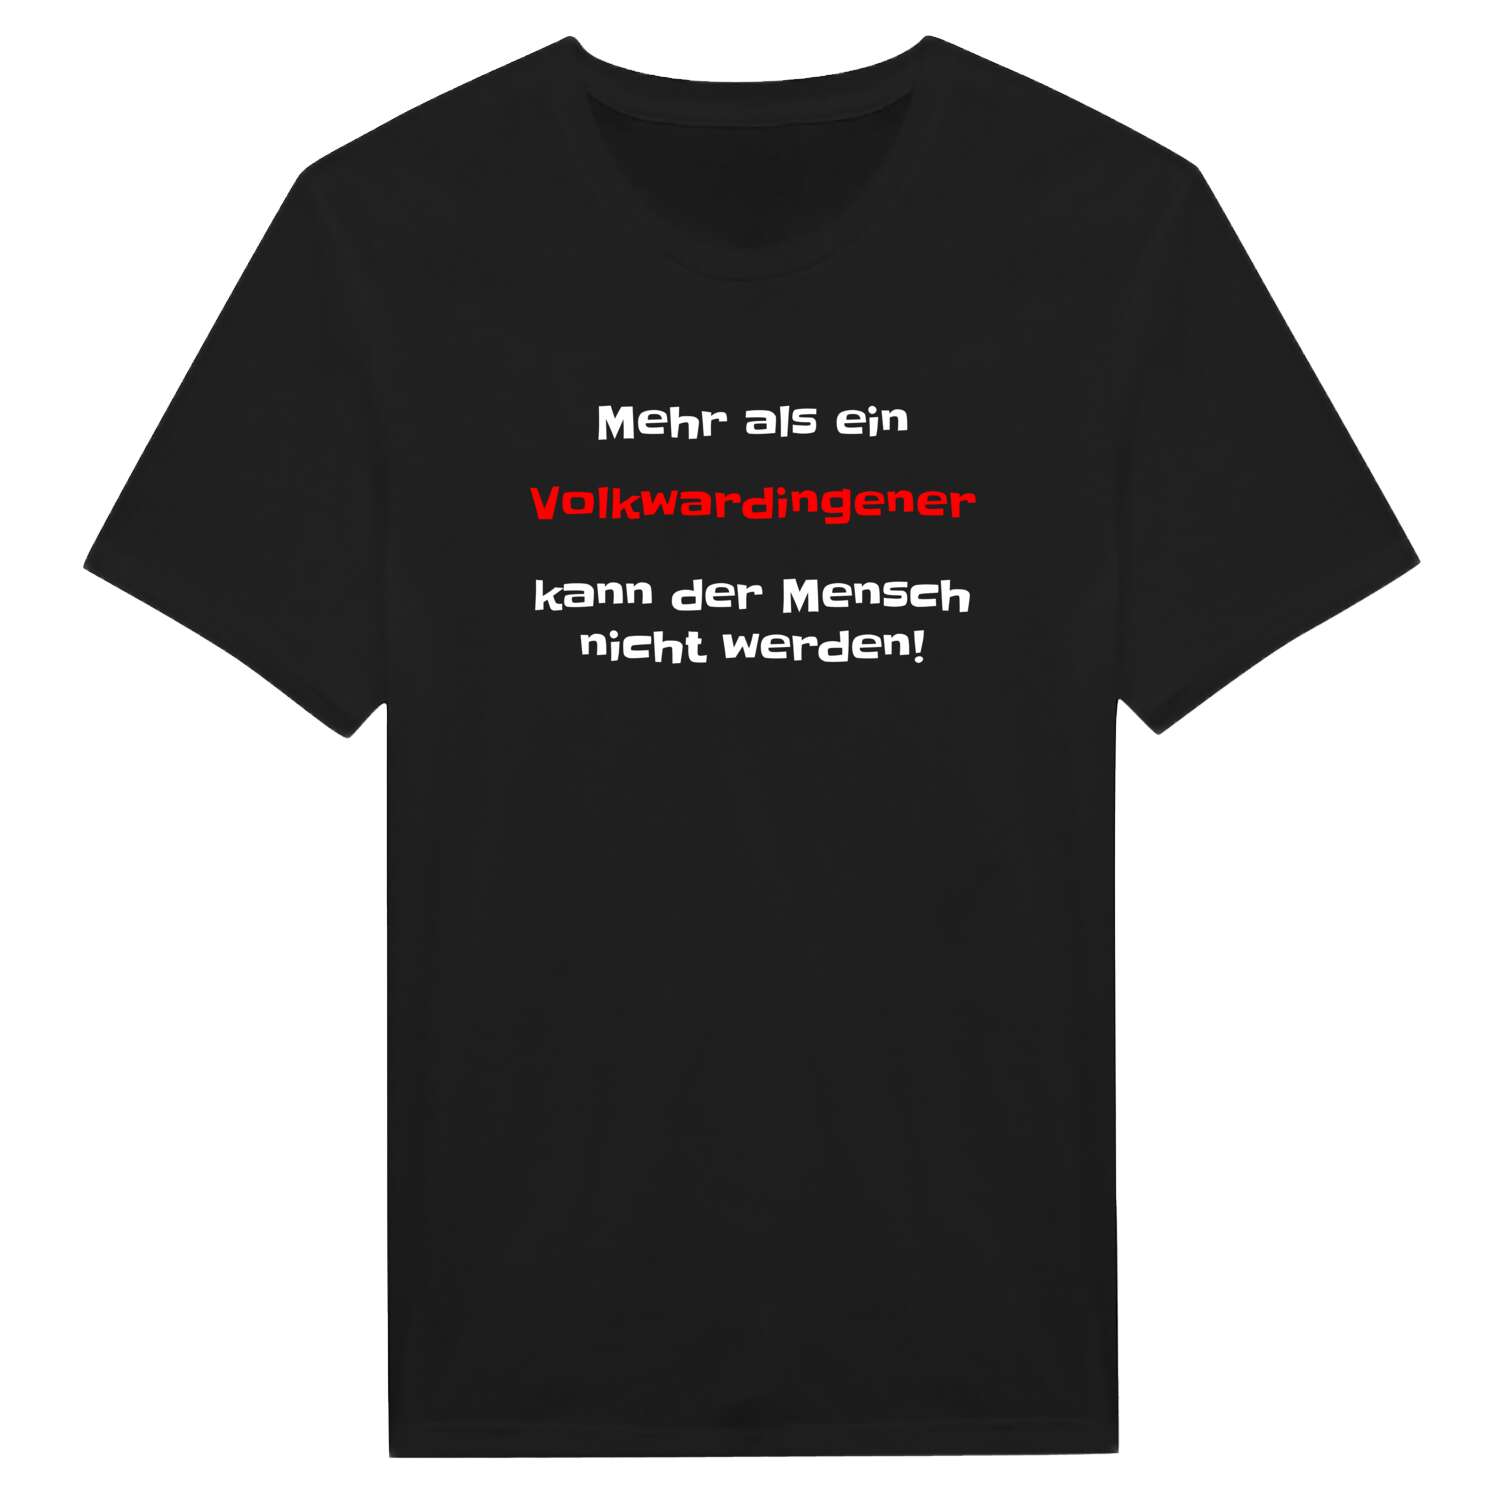 Volkwardingen T-Shirt »Mehr als ein«